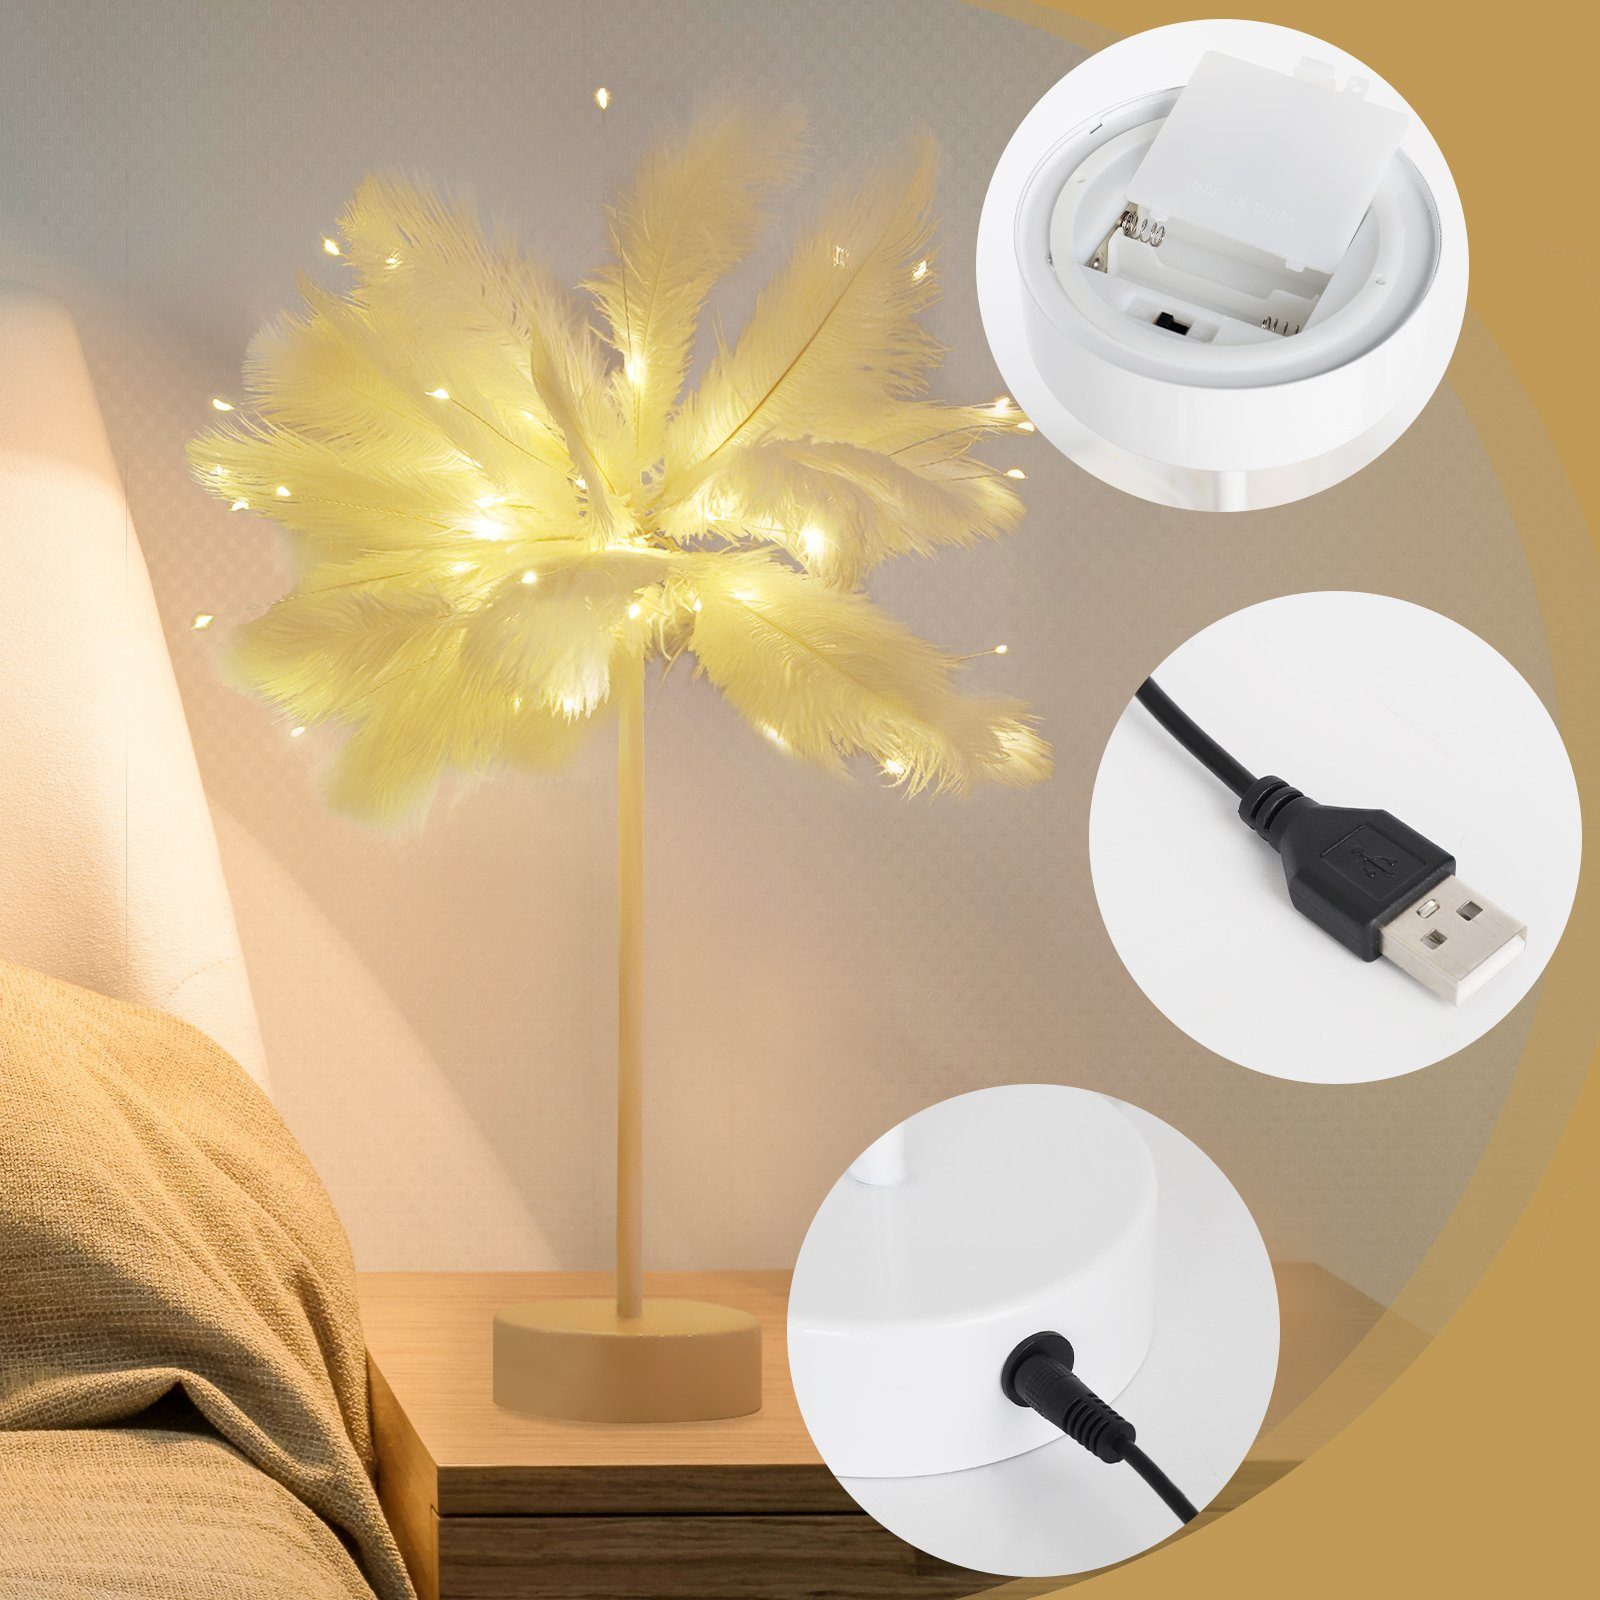 LED Salcar Tischlampe Feather LED-Lichterkette Warmweiß Weihnachtsdeko Weihnachtsbeleuchtung